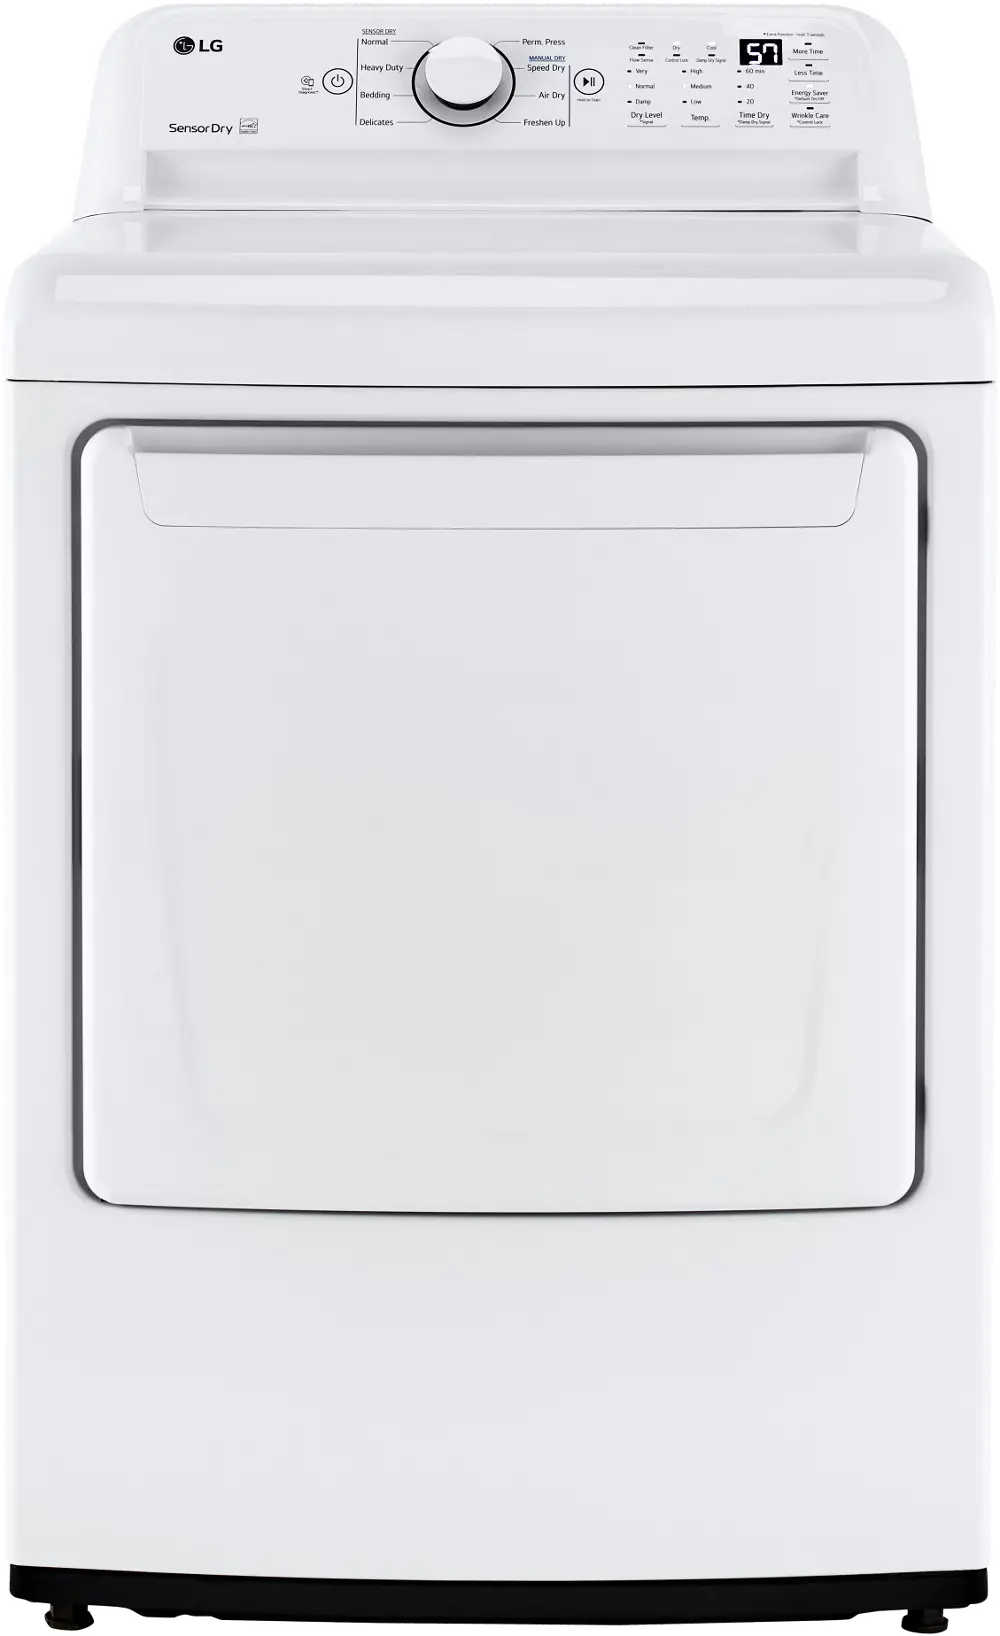 DLG7001W LG Gas Dryer 7000 - 7.3 cu. ft. White-1